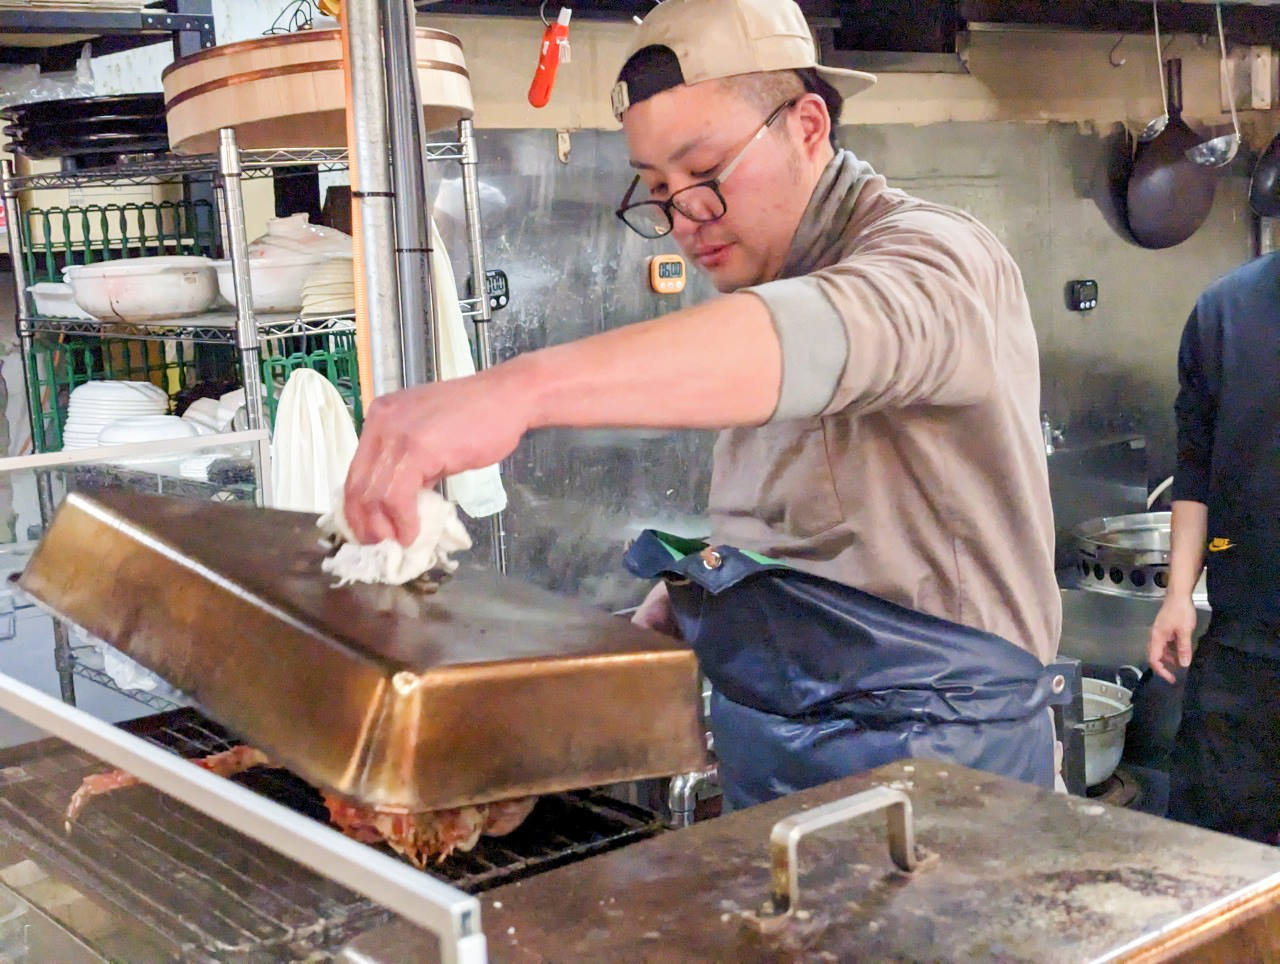 小樽三角市場美食景點，必吃海鮮丼、帝王蟹、鱈場蟹，惠比壽櫻餐廳有中文人員超親切，桌邊服務切螃蟹